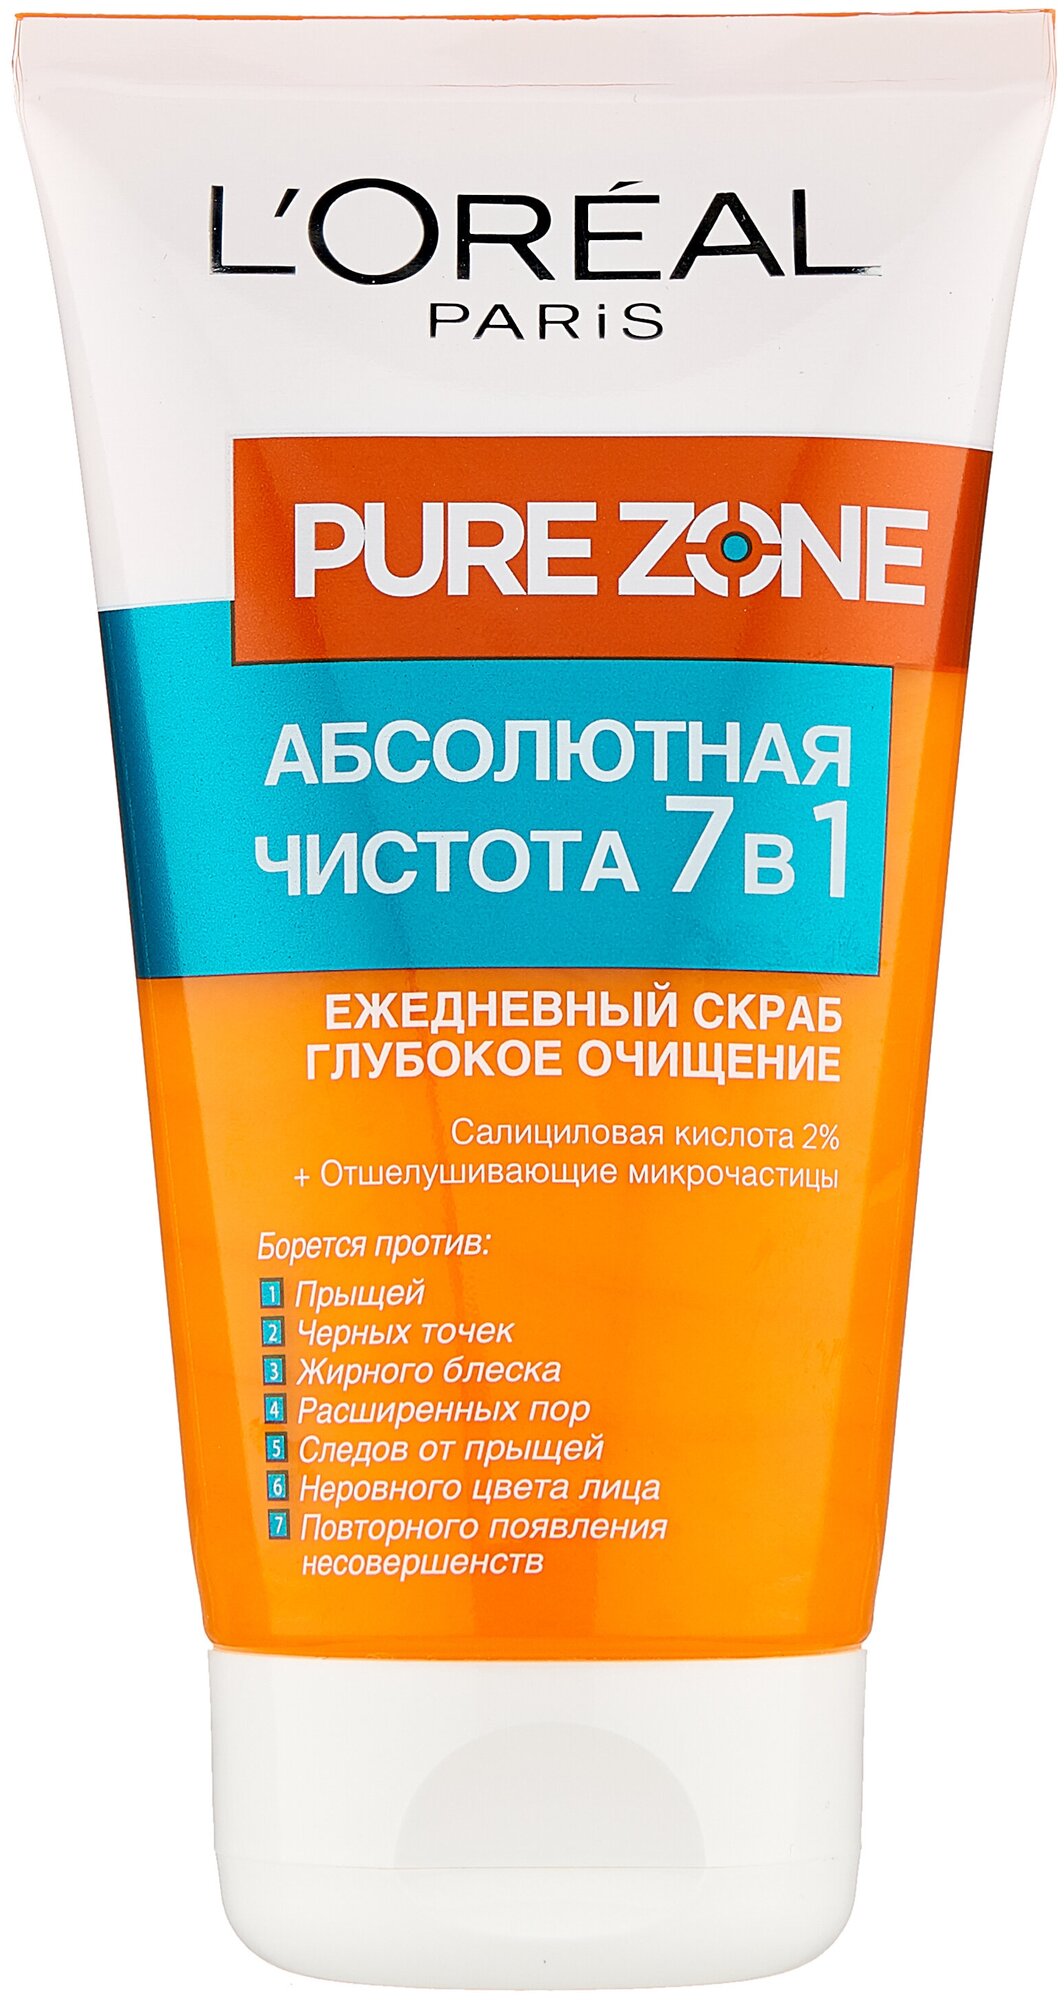 L'Oreal Paris Pure Zone Глубокое очищение 7 в 1 Скраб для лица против  прыщей и черных точек — купить в интернет-магазине по низкой цене на Яндекс  Маркете